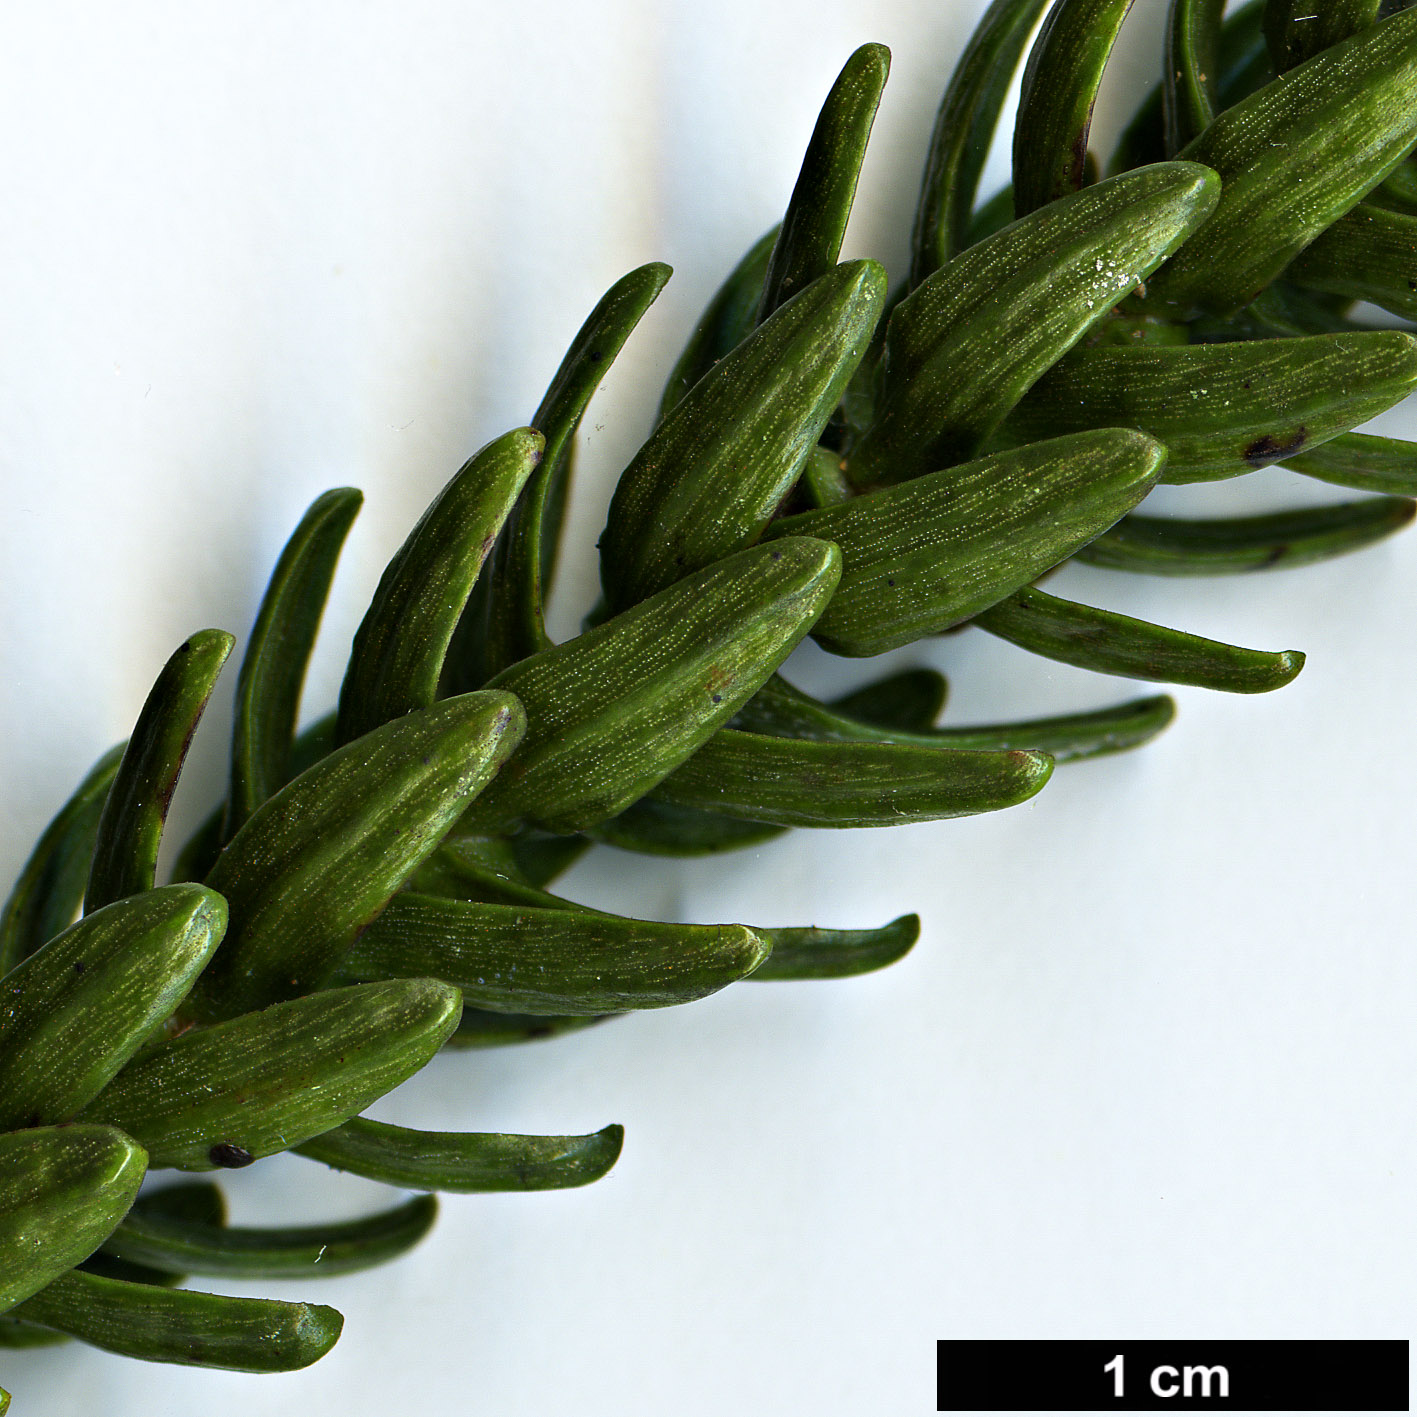 High resolution image: Family: Araucariaceae - Genus: Araucaria - Taxon: luxurians